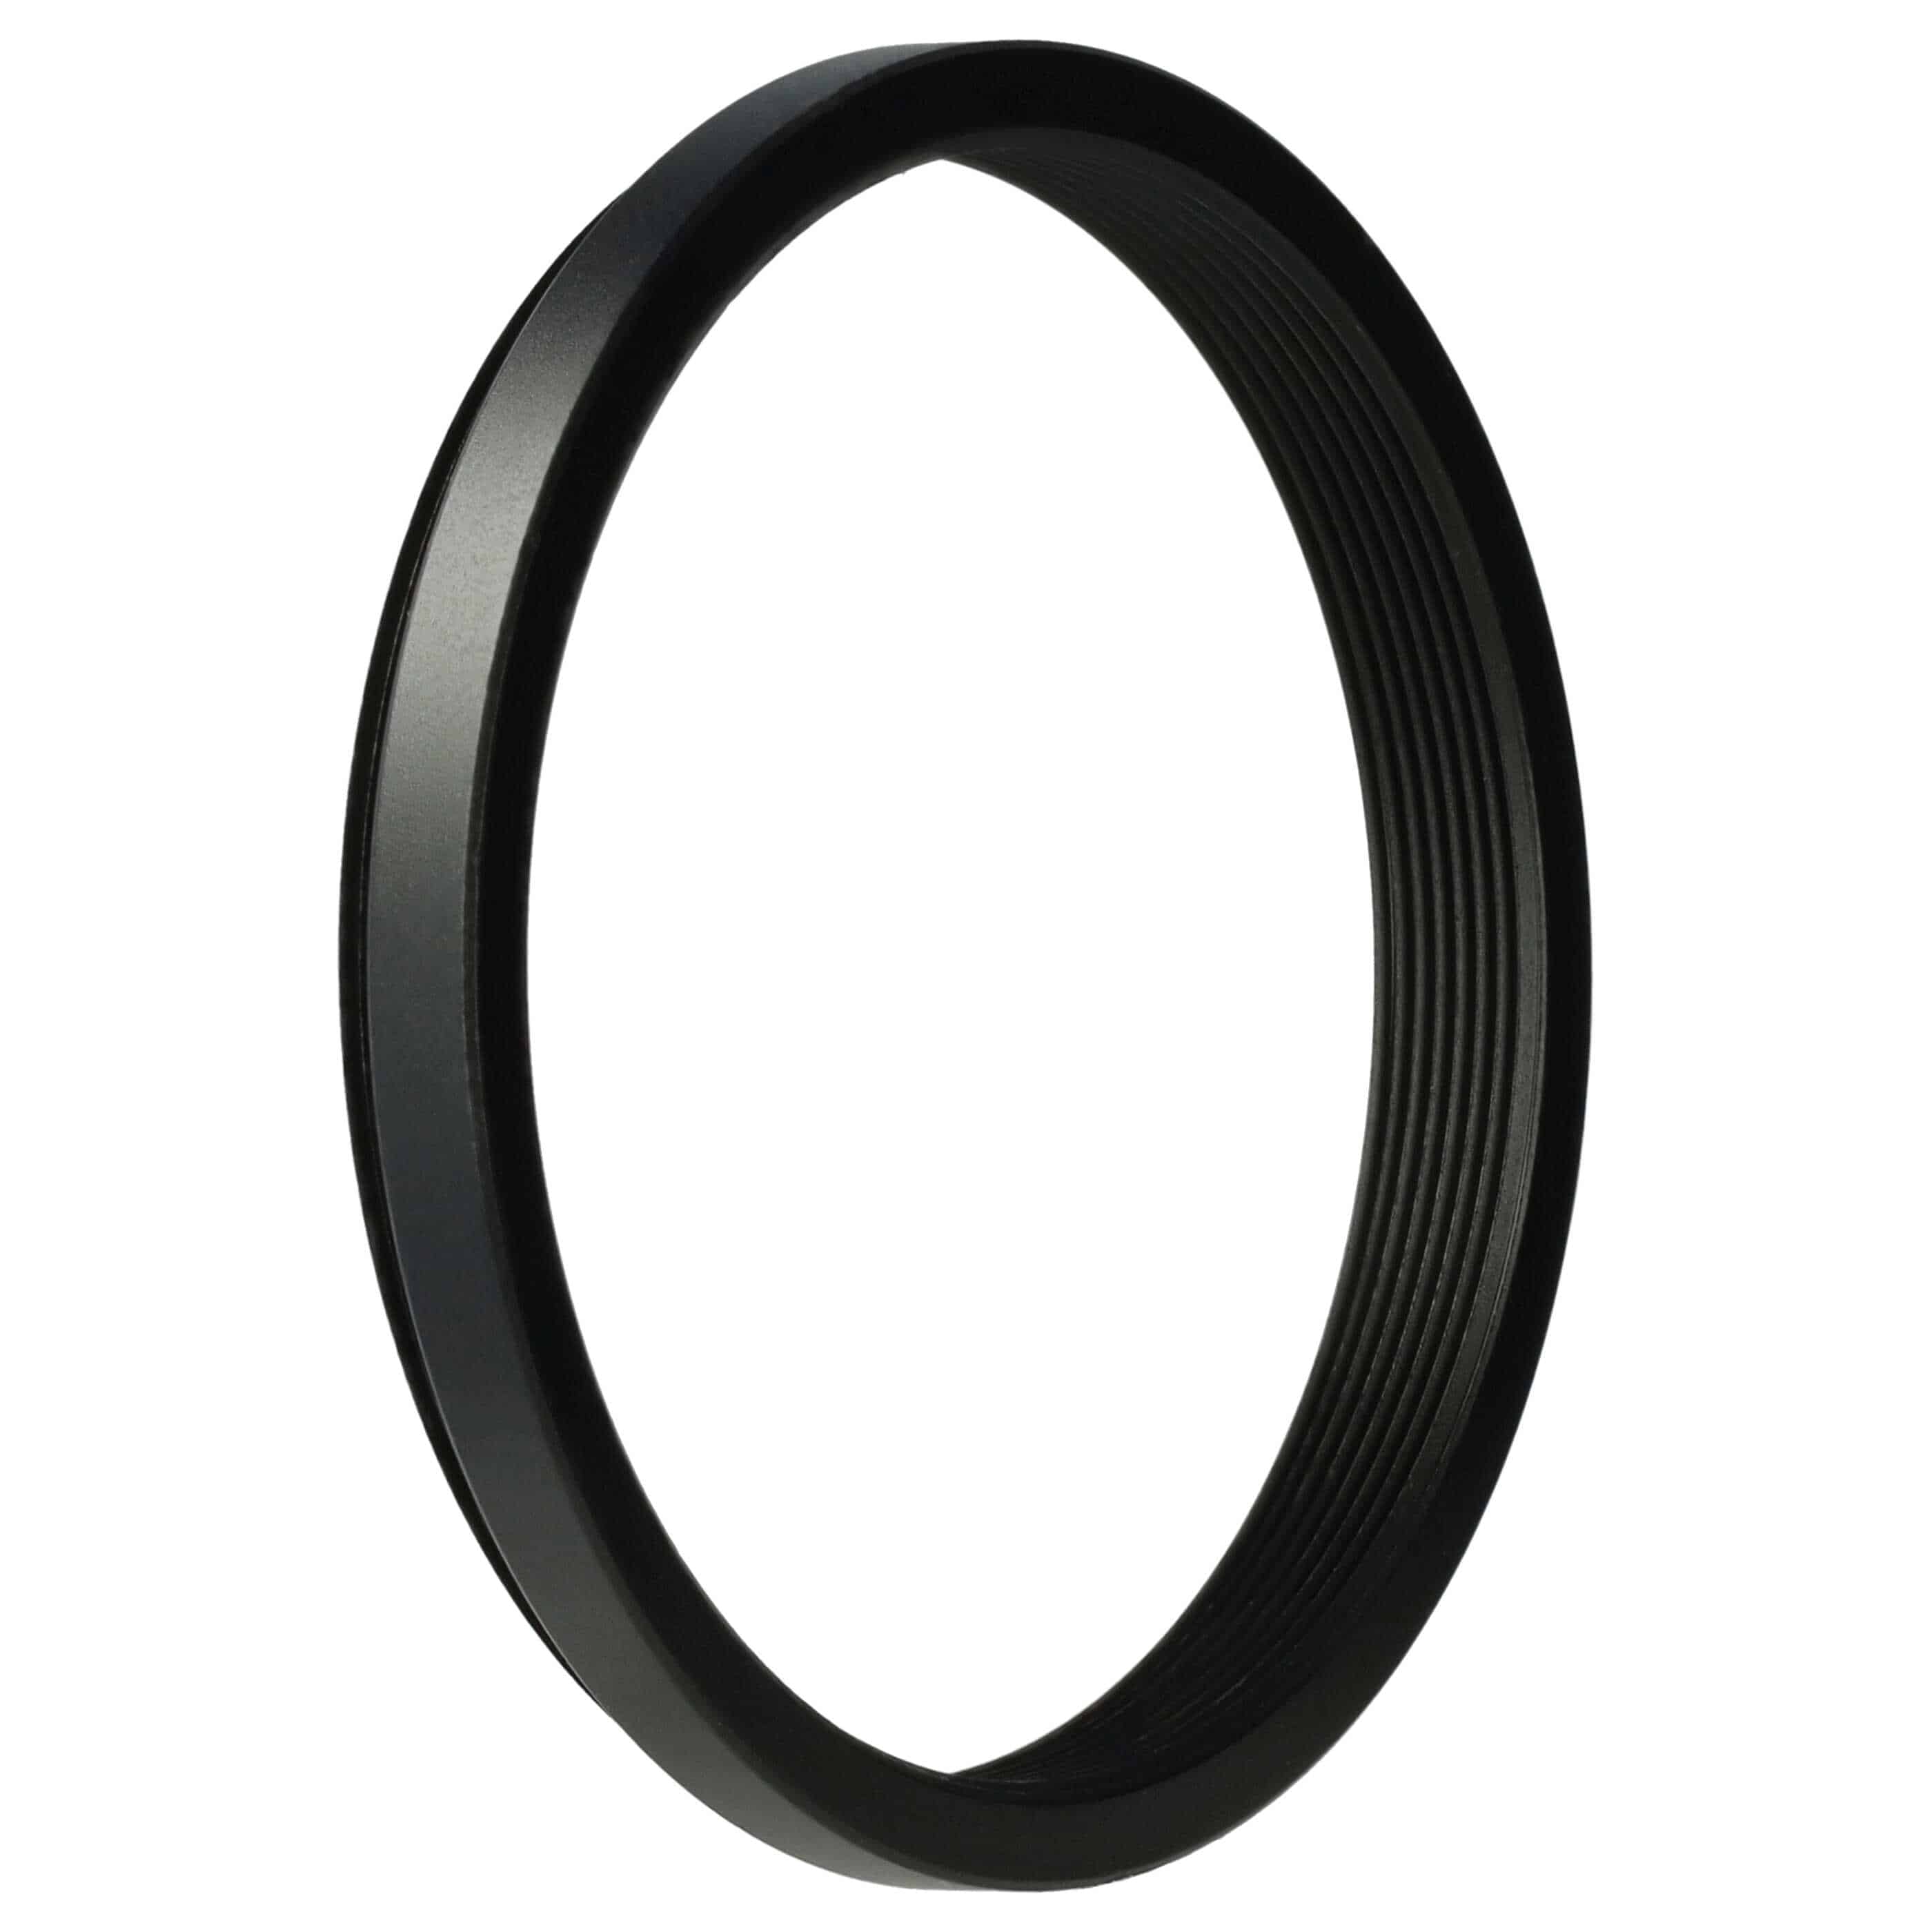 Redukcja filtrowa adapter Step-Down 49 mm - 46 mm pasująca do obiektywu - metal, czarny